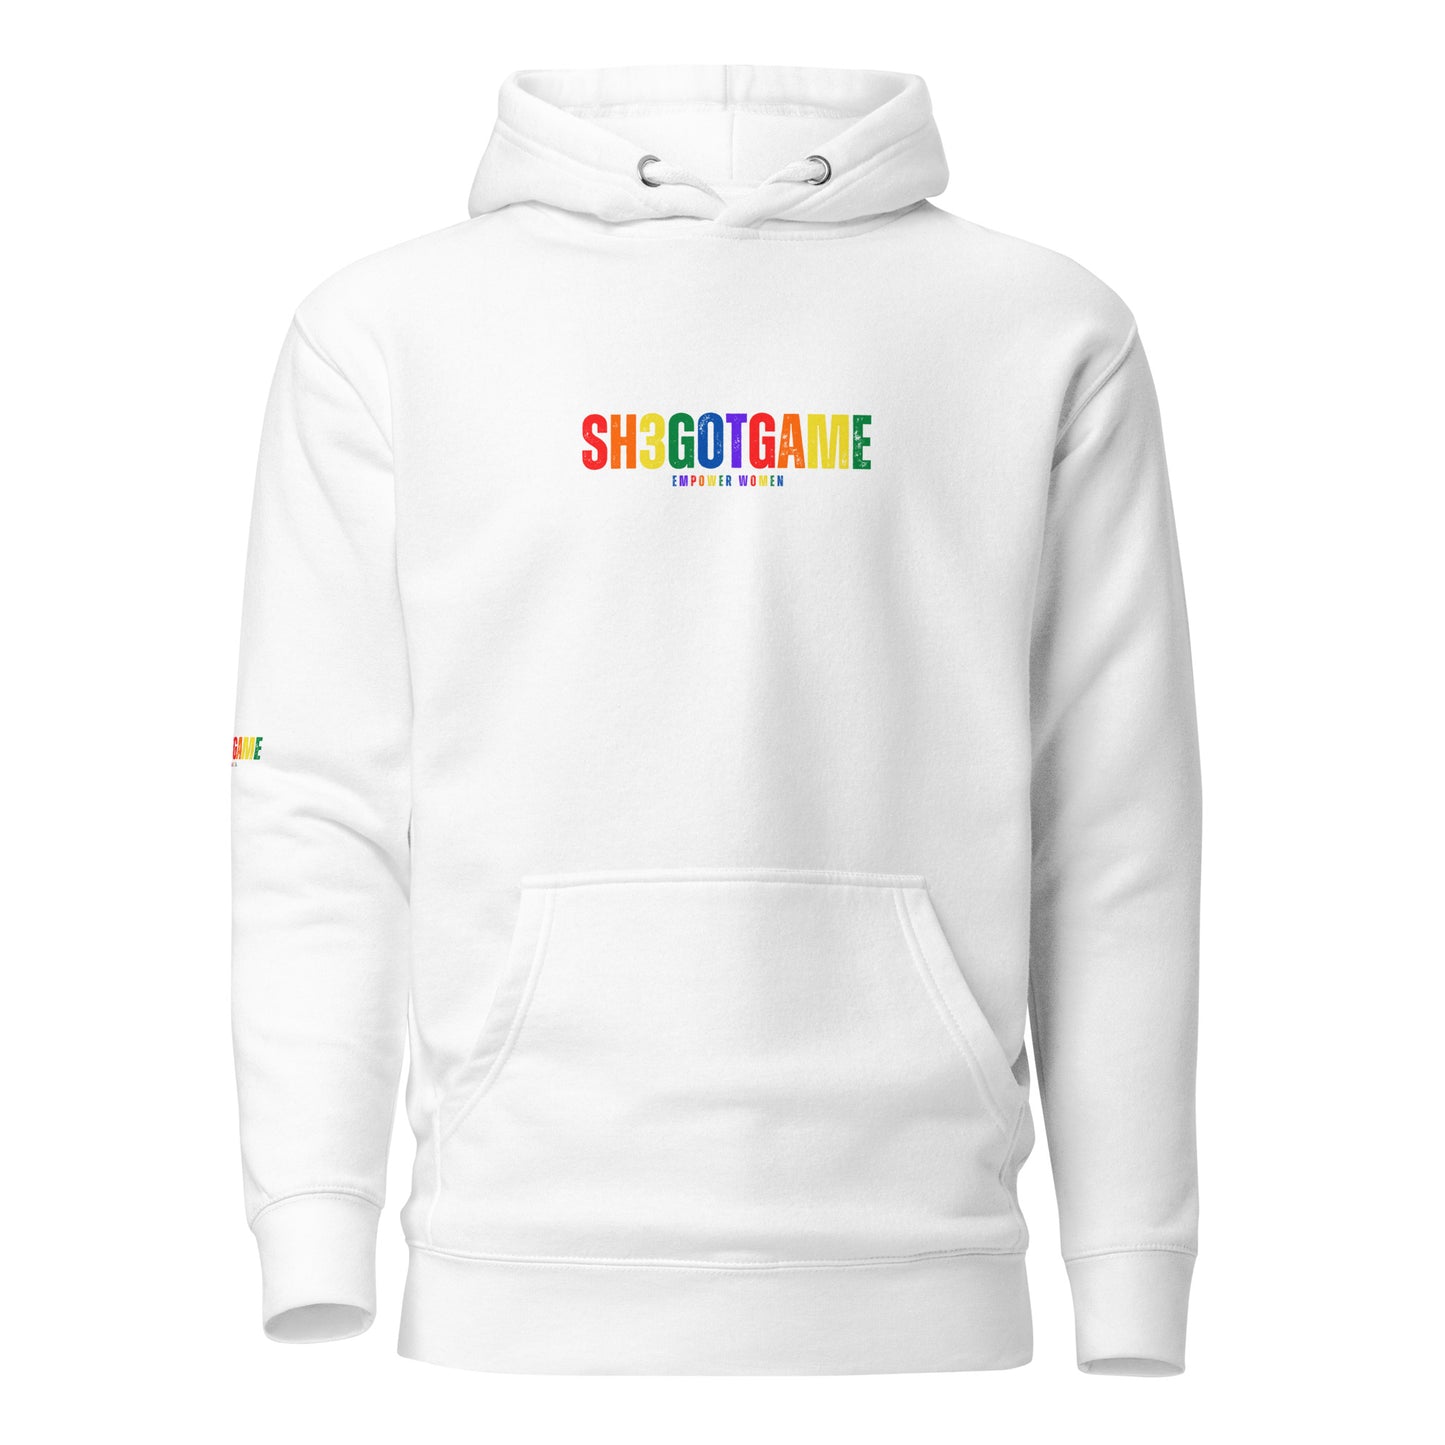 Sh3gotgame Pride Label Hoodie